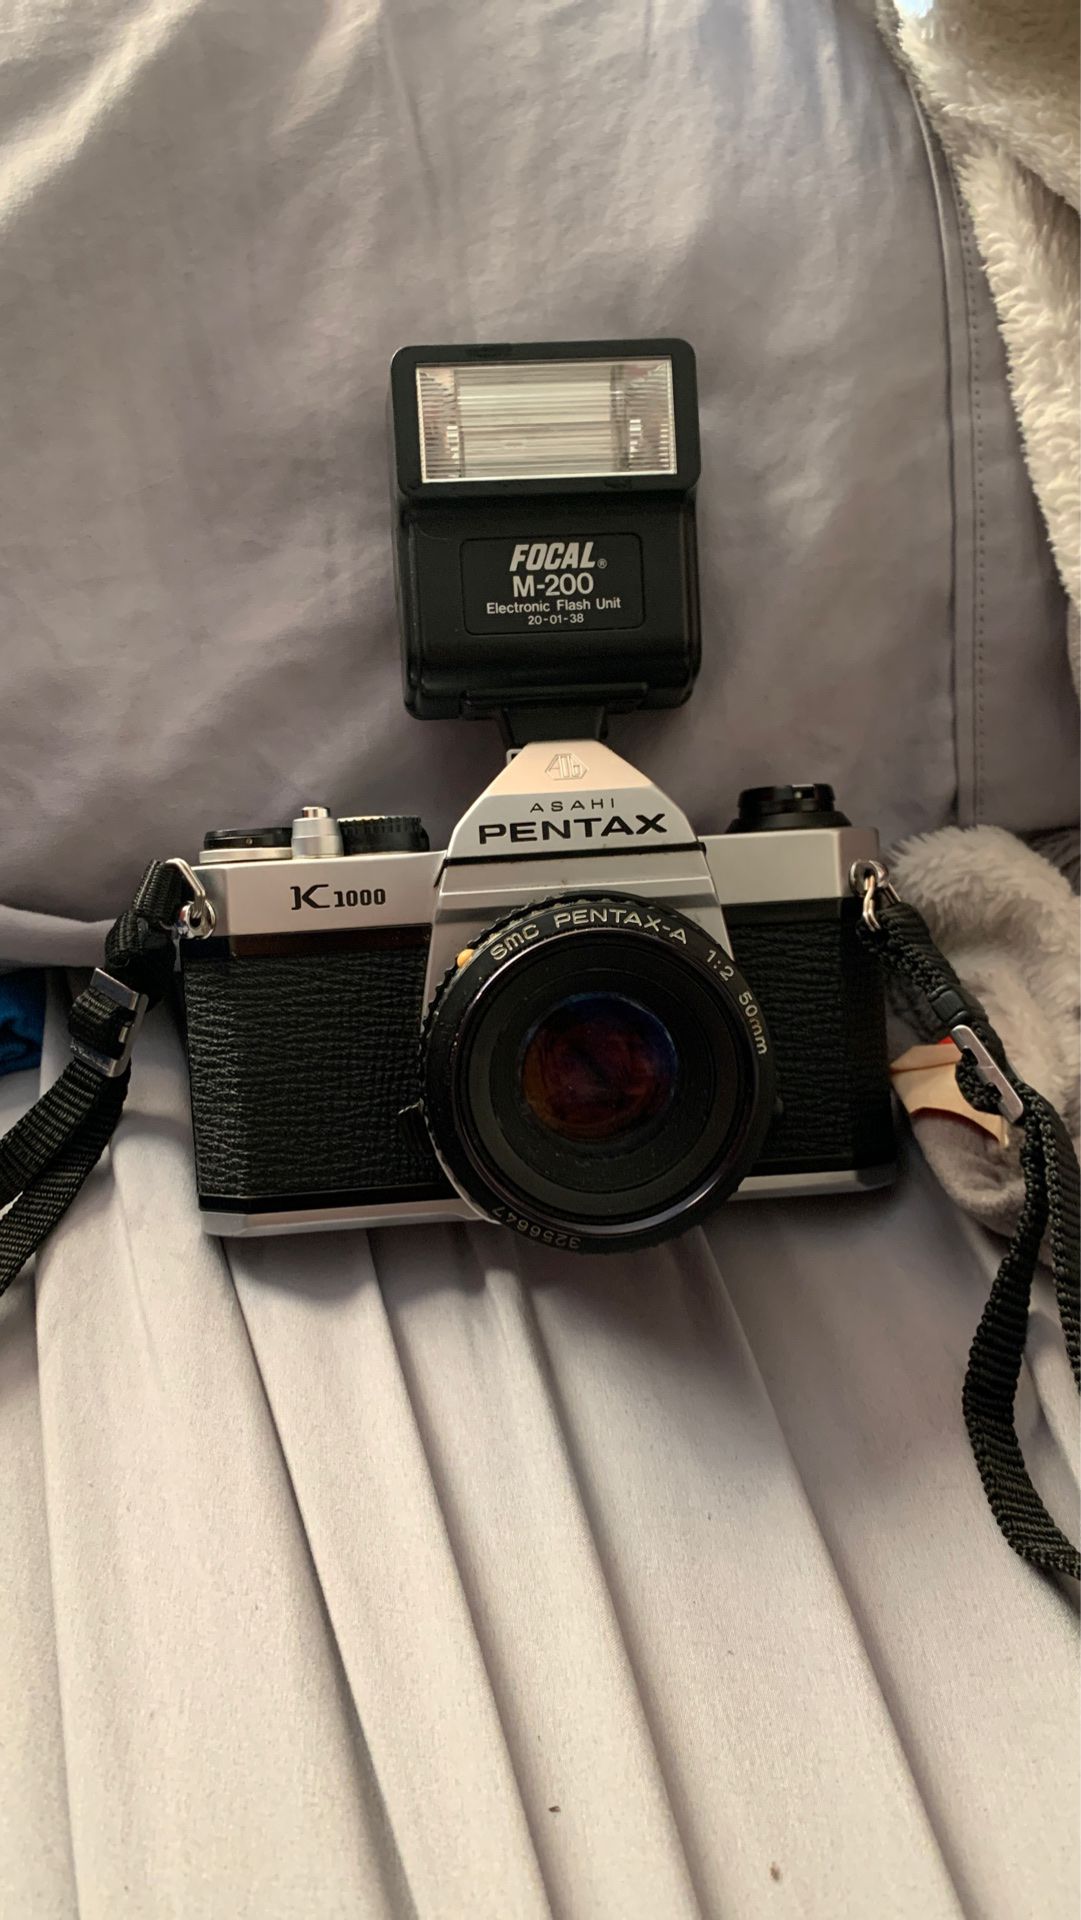 Asahi Pentax k1000 camera